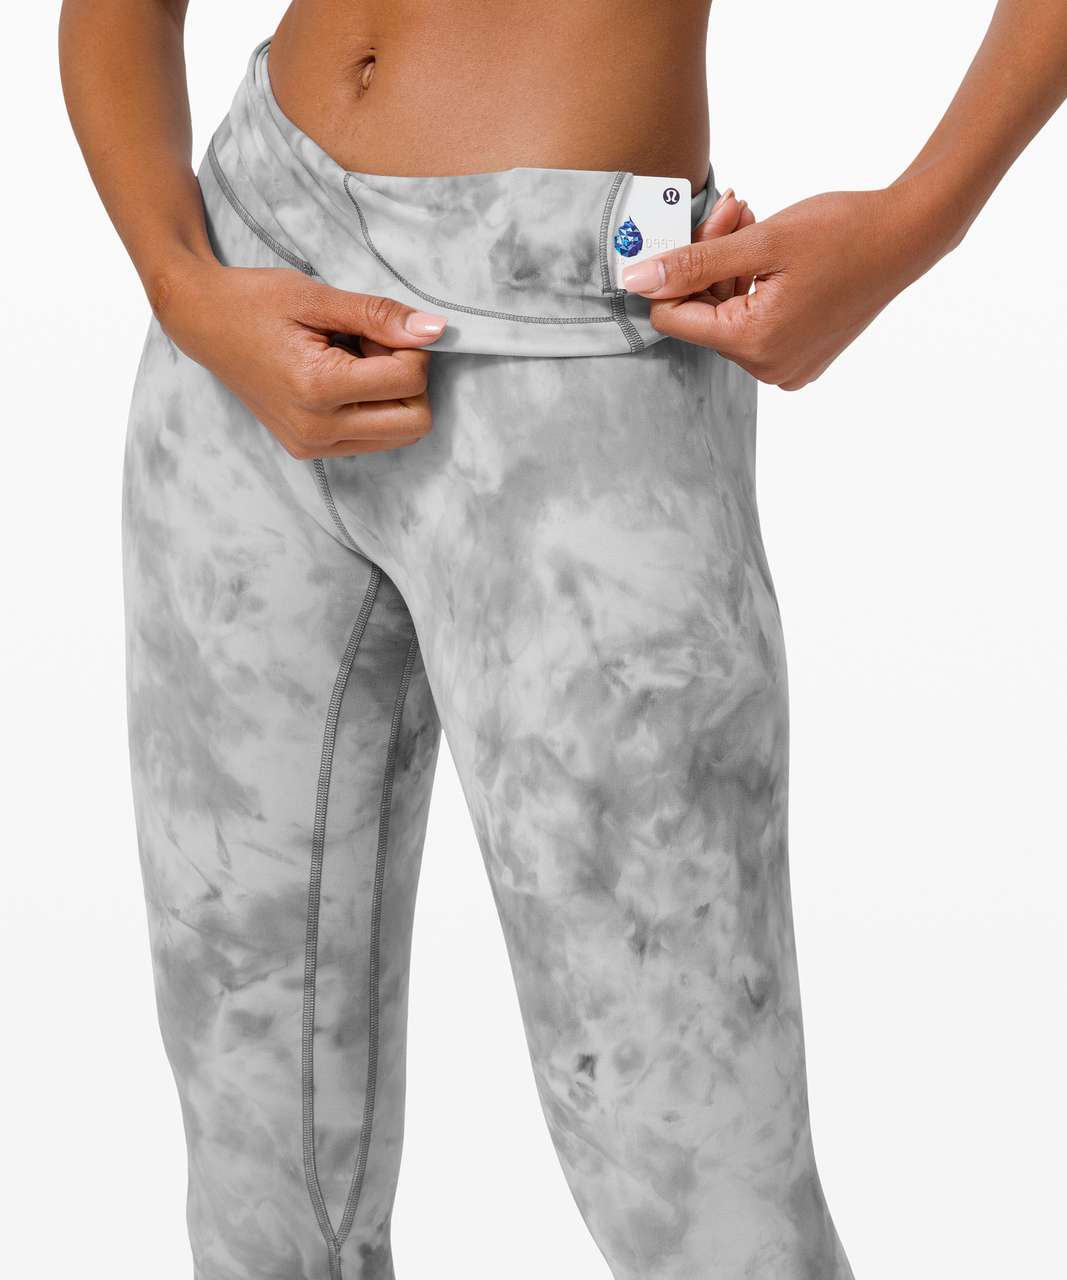 Lululemon Flare Yoga Pants Size 4 Sleeve